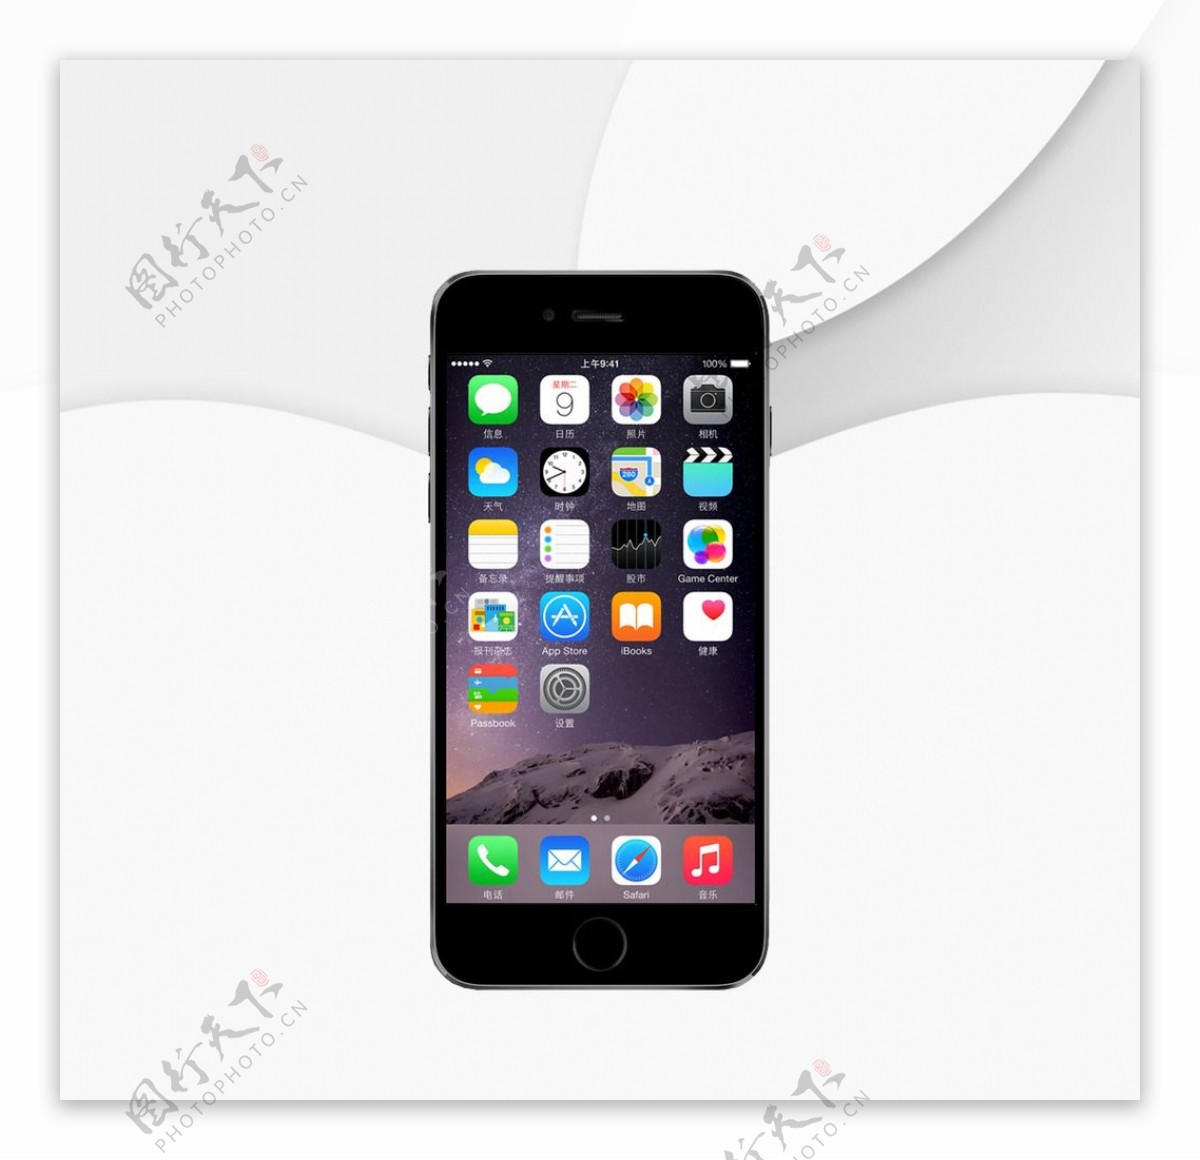 黑色的苹果iphone6 ui手机样式设计psd分层素材下载